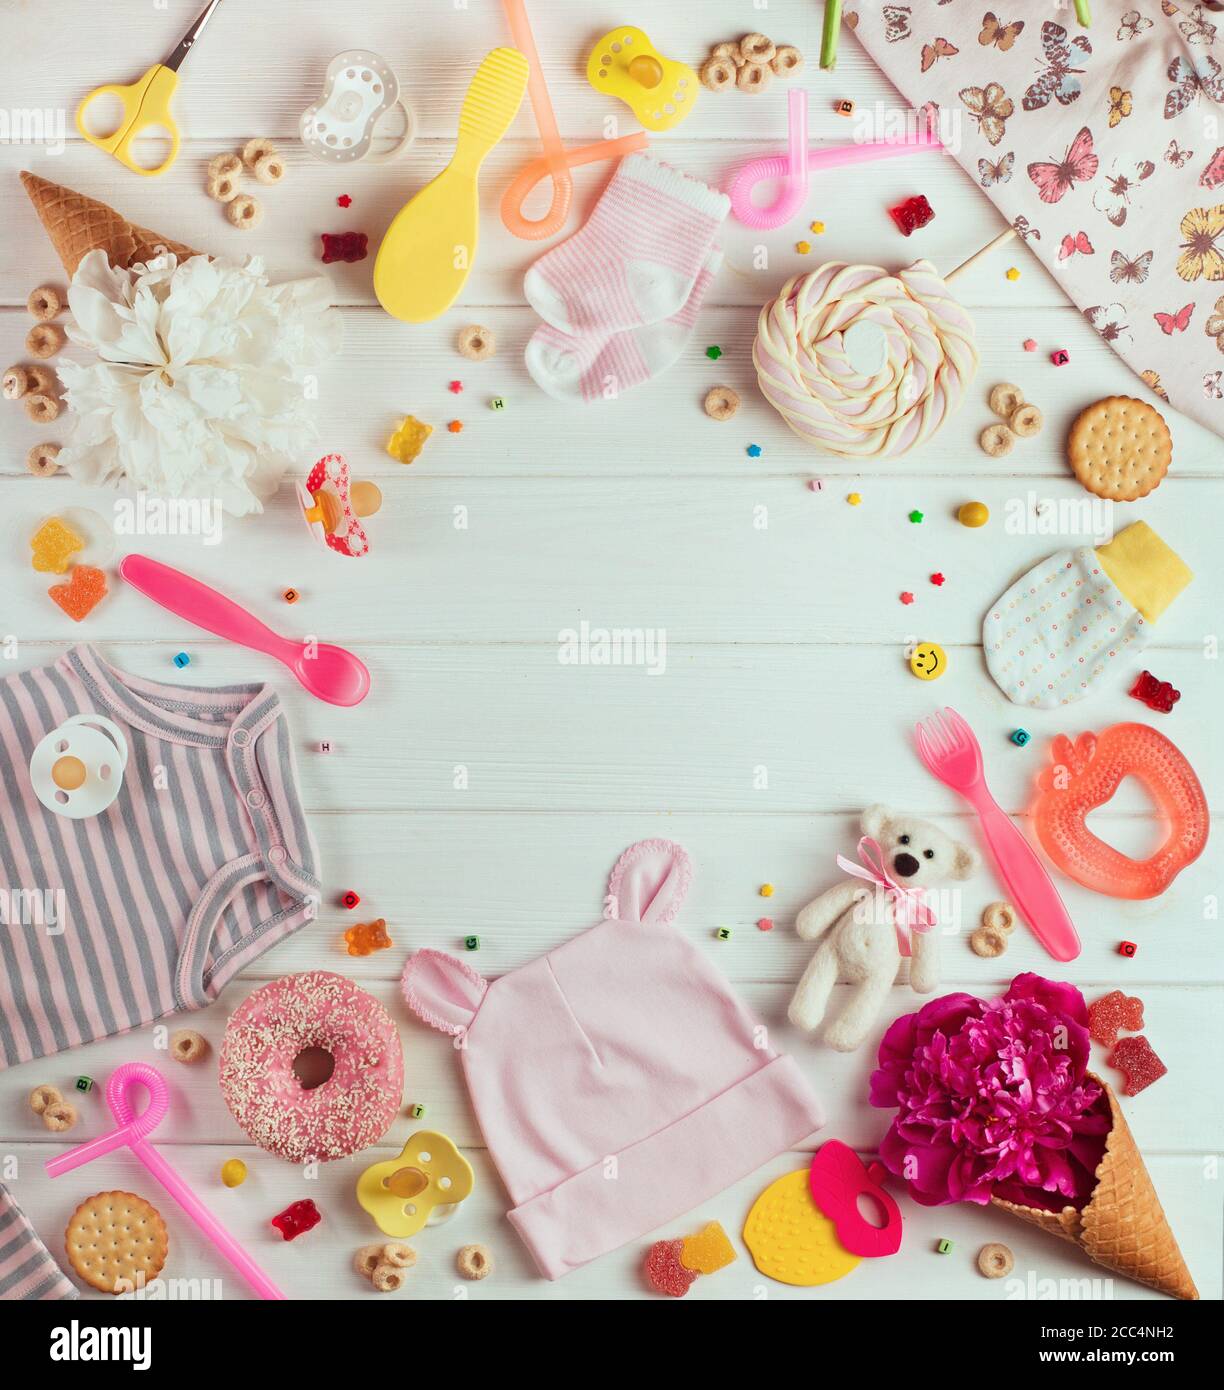 Fondo de la fiesta de la ducha del bebé con la ropa del bebé, los  accesorios y los caramelos Fotografía de stock - Alamy